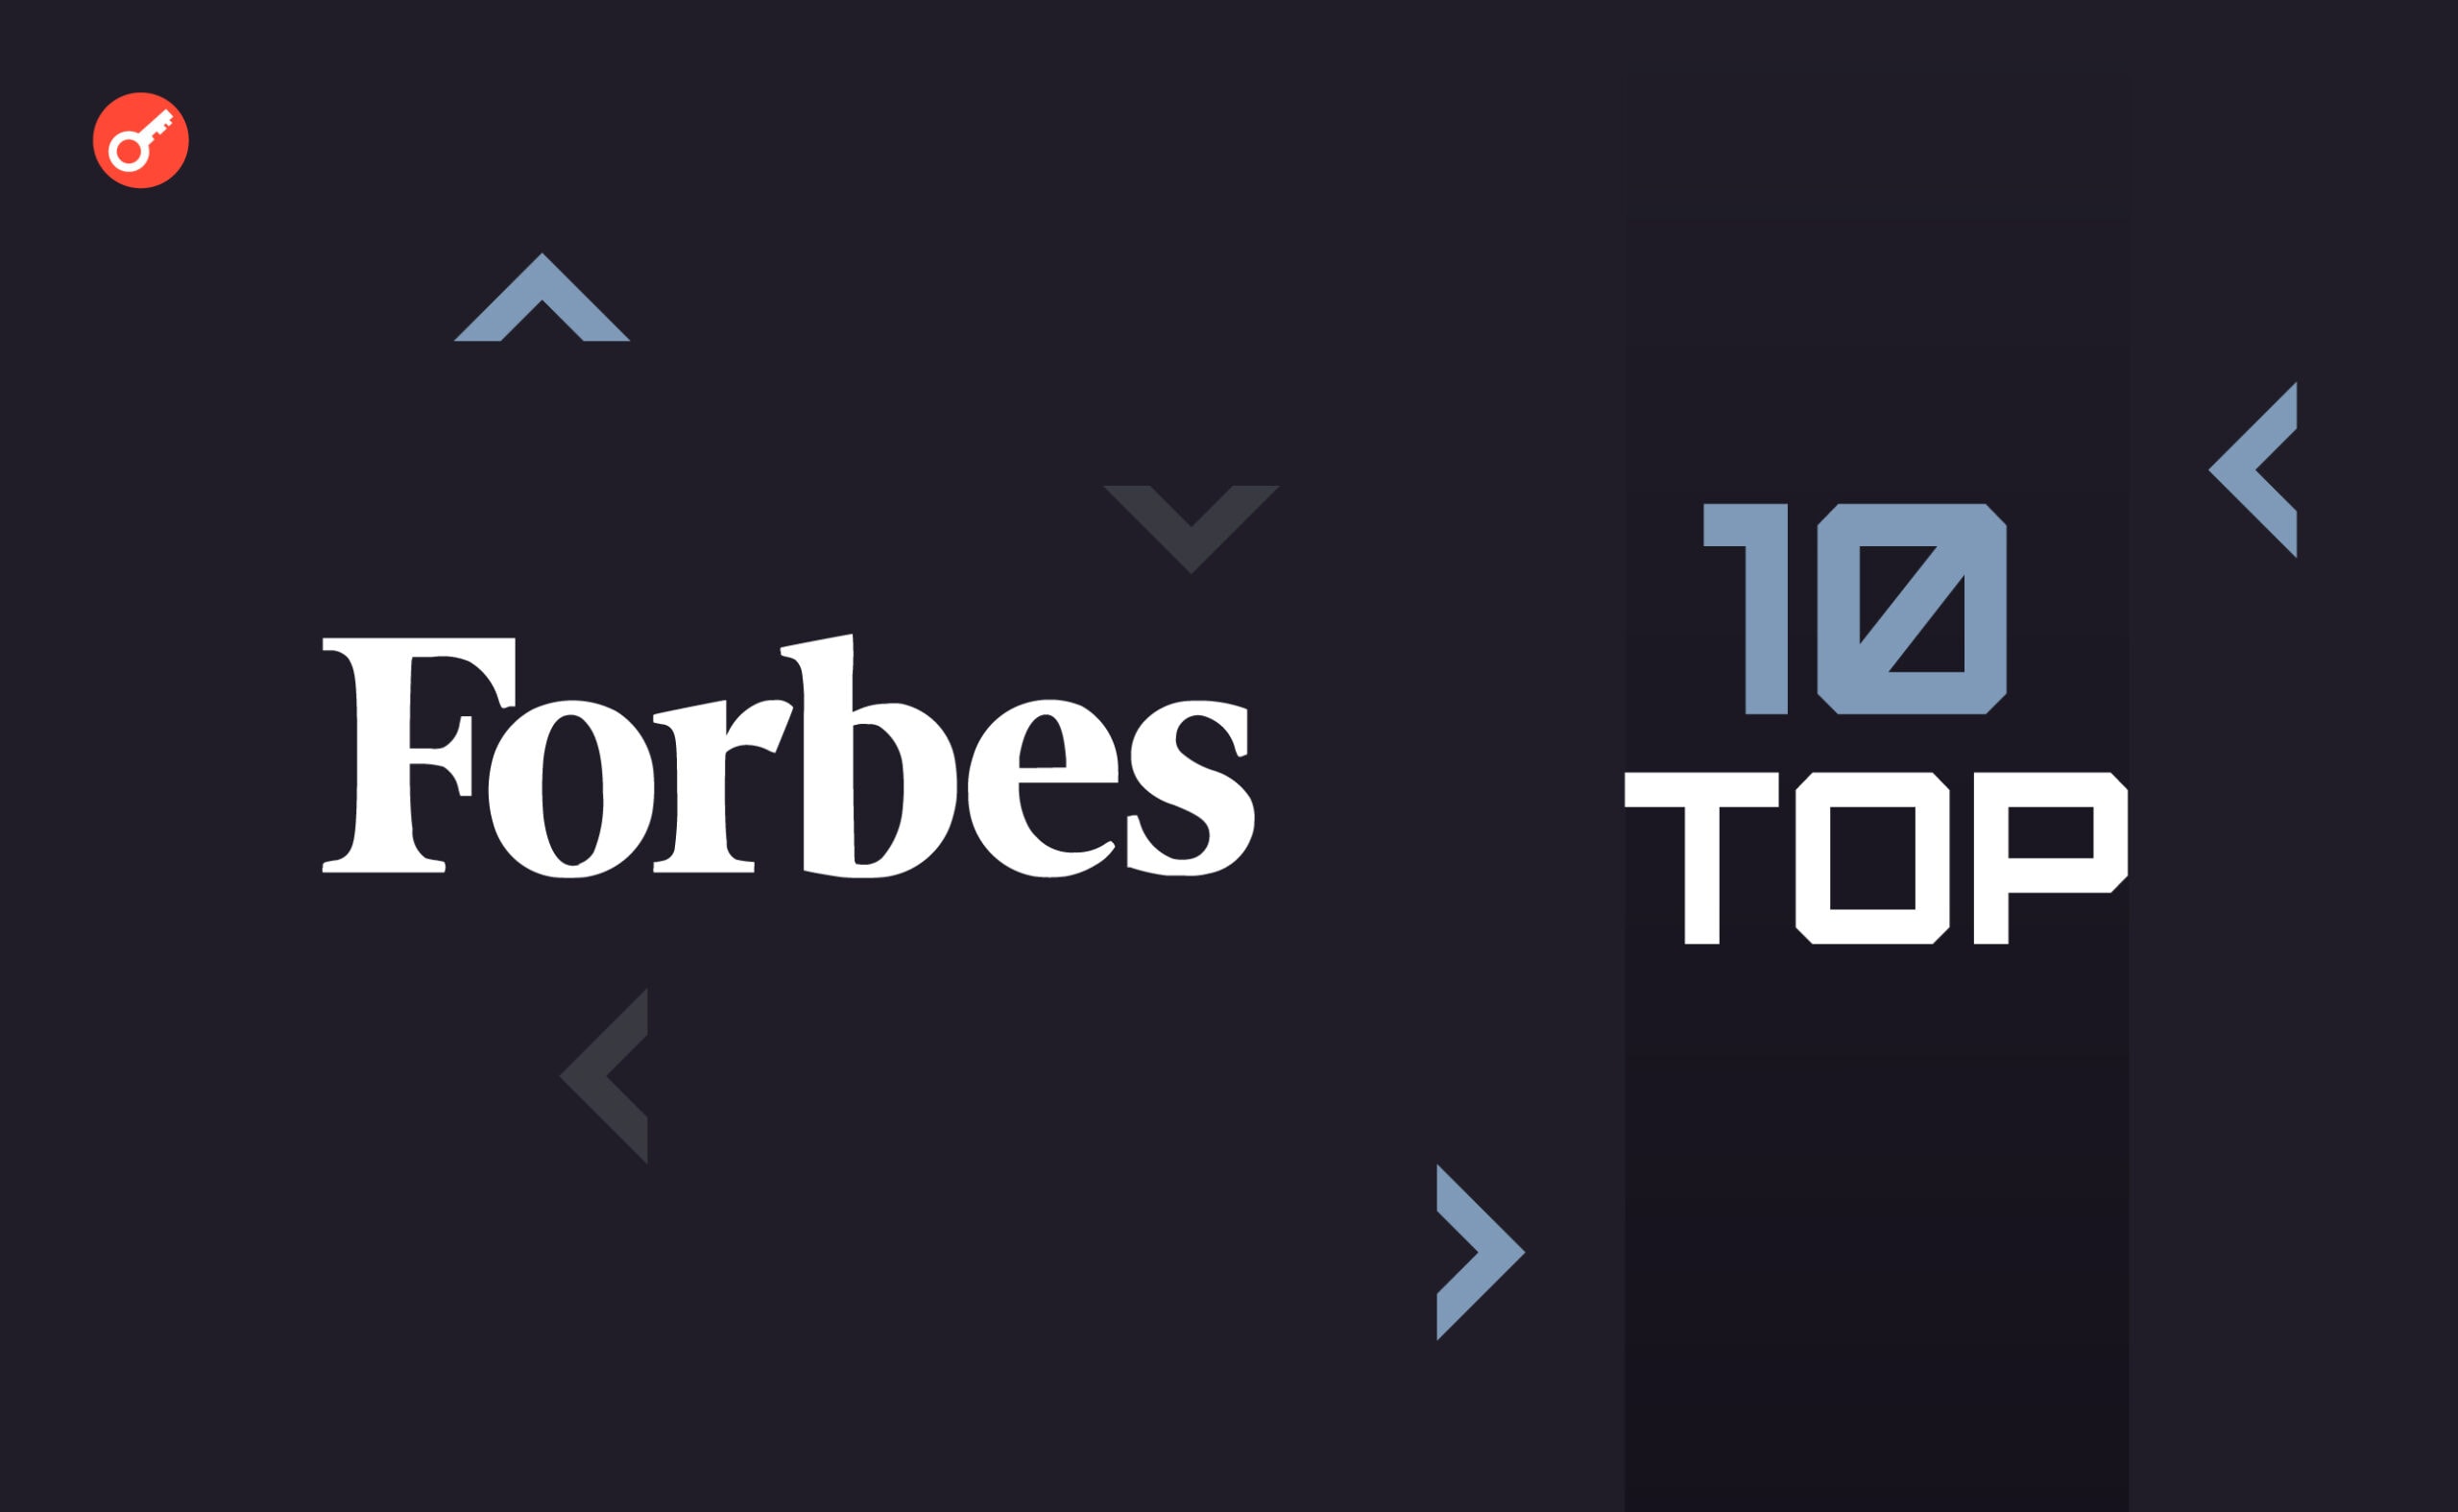 Forbes опубликовал топ-10 лучших финтех-фирм в США. В списке есть Ripple и OpenSea. Заглавный коллаж новости.